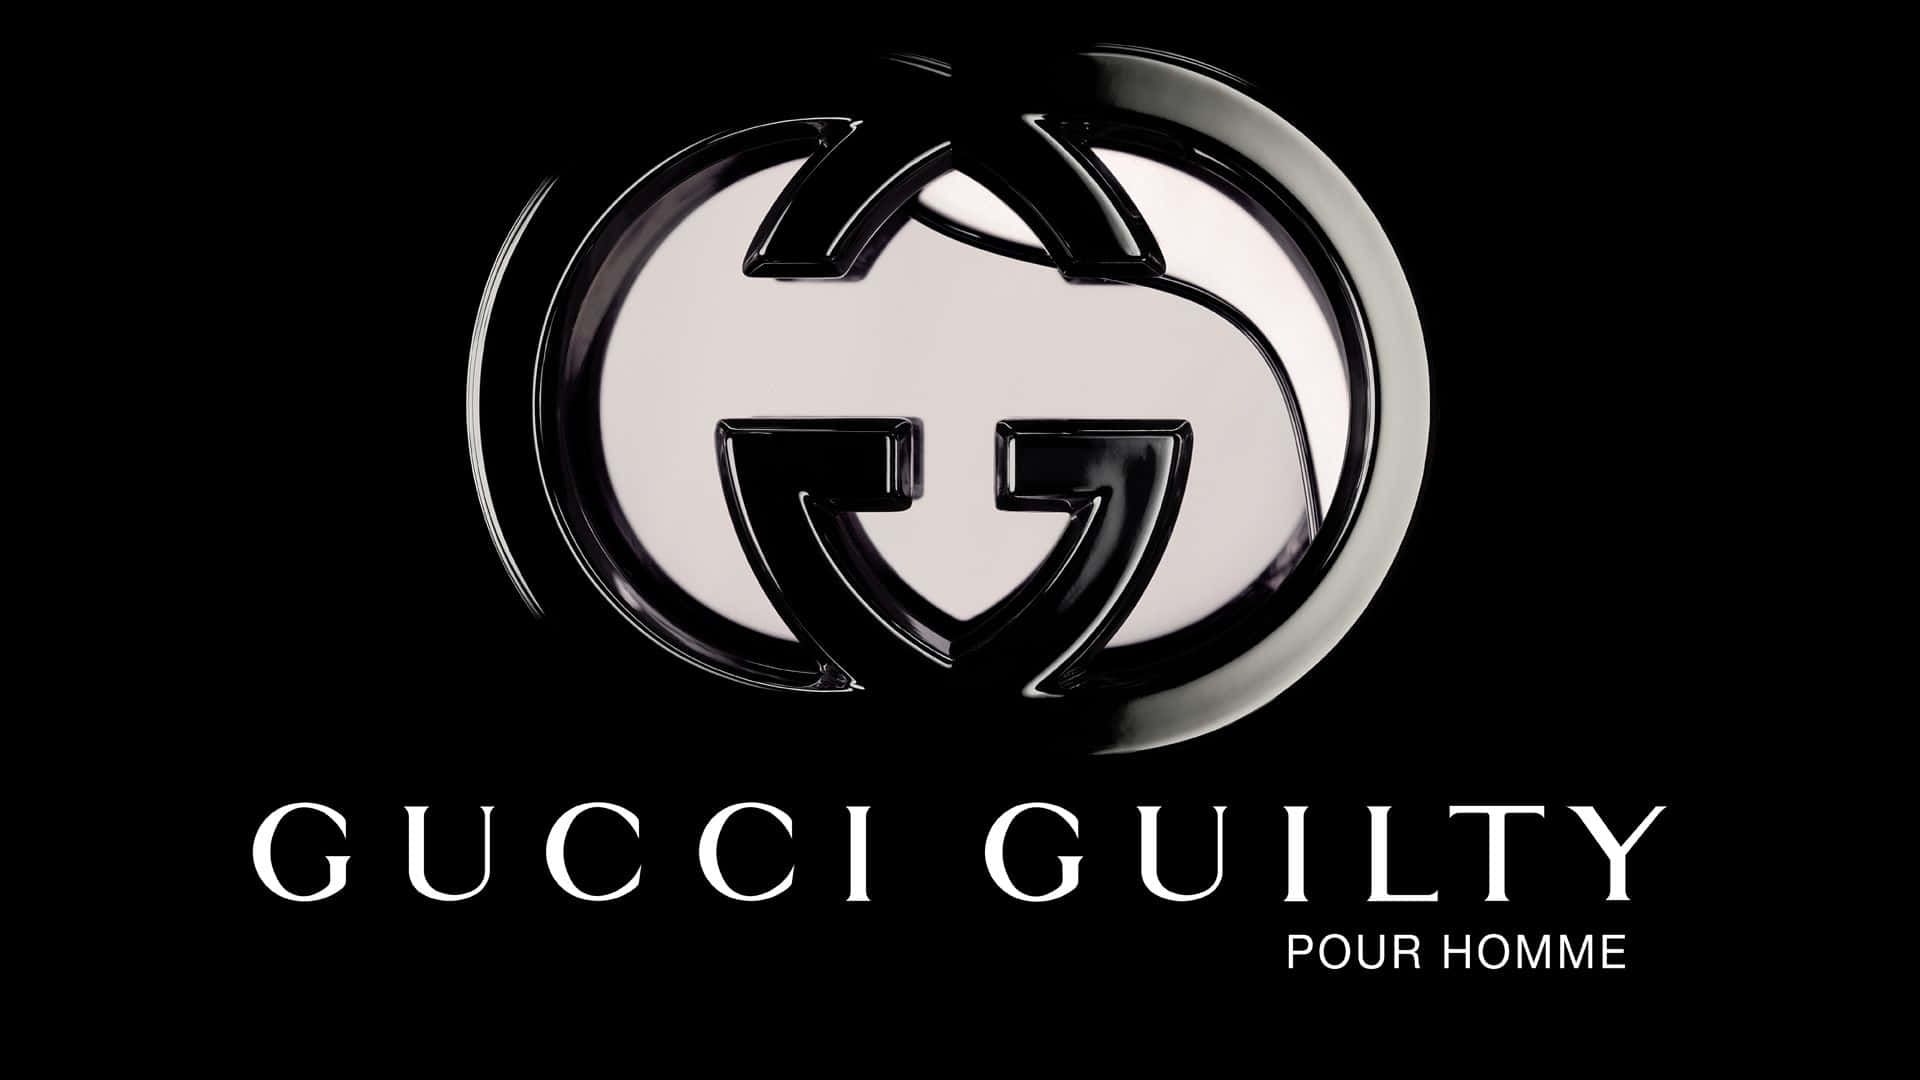 Fondoartístico Brillante Con El Logotipo Plateado De Gucci Guilty.